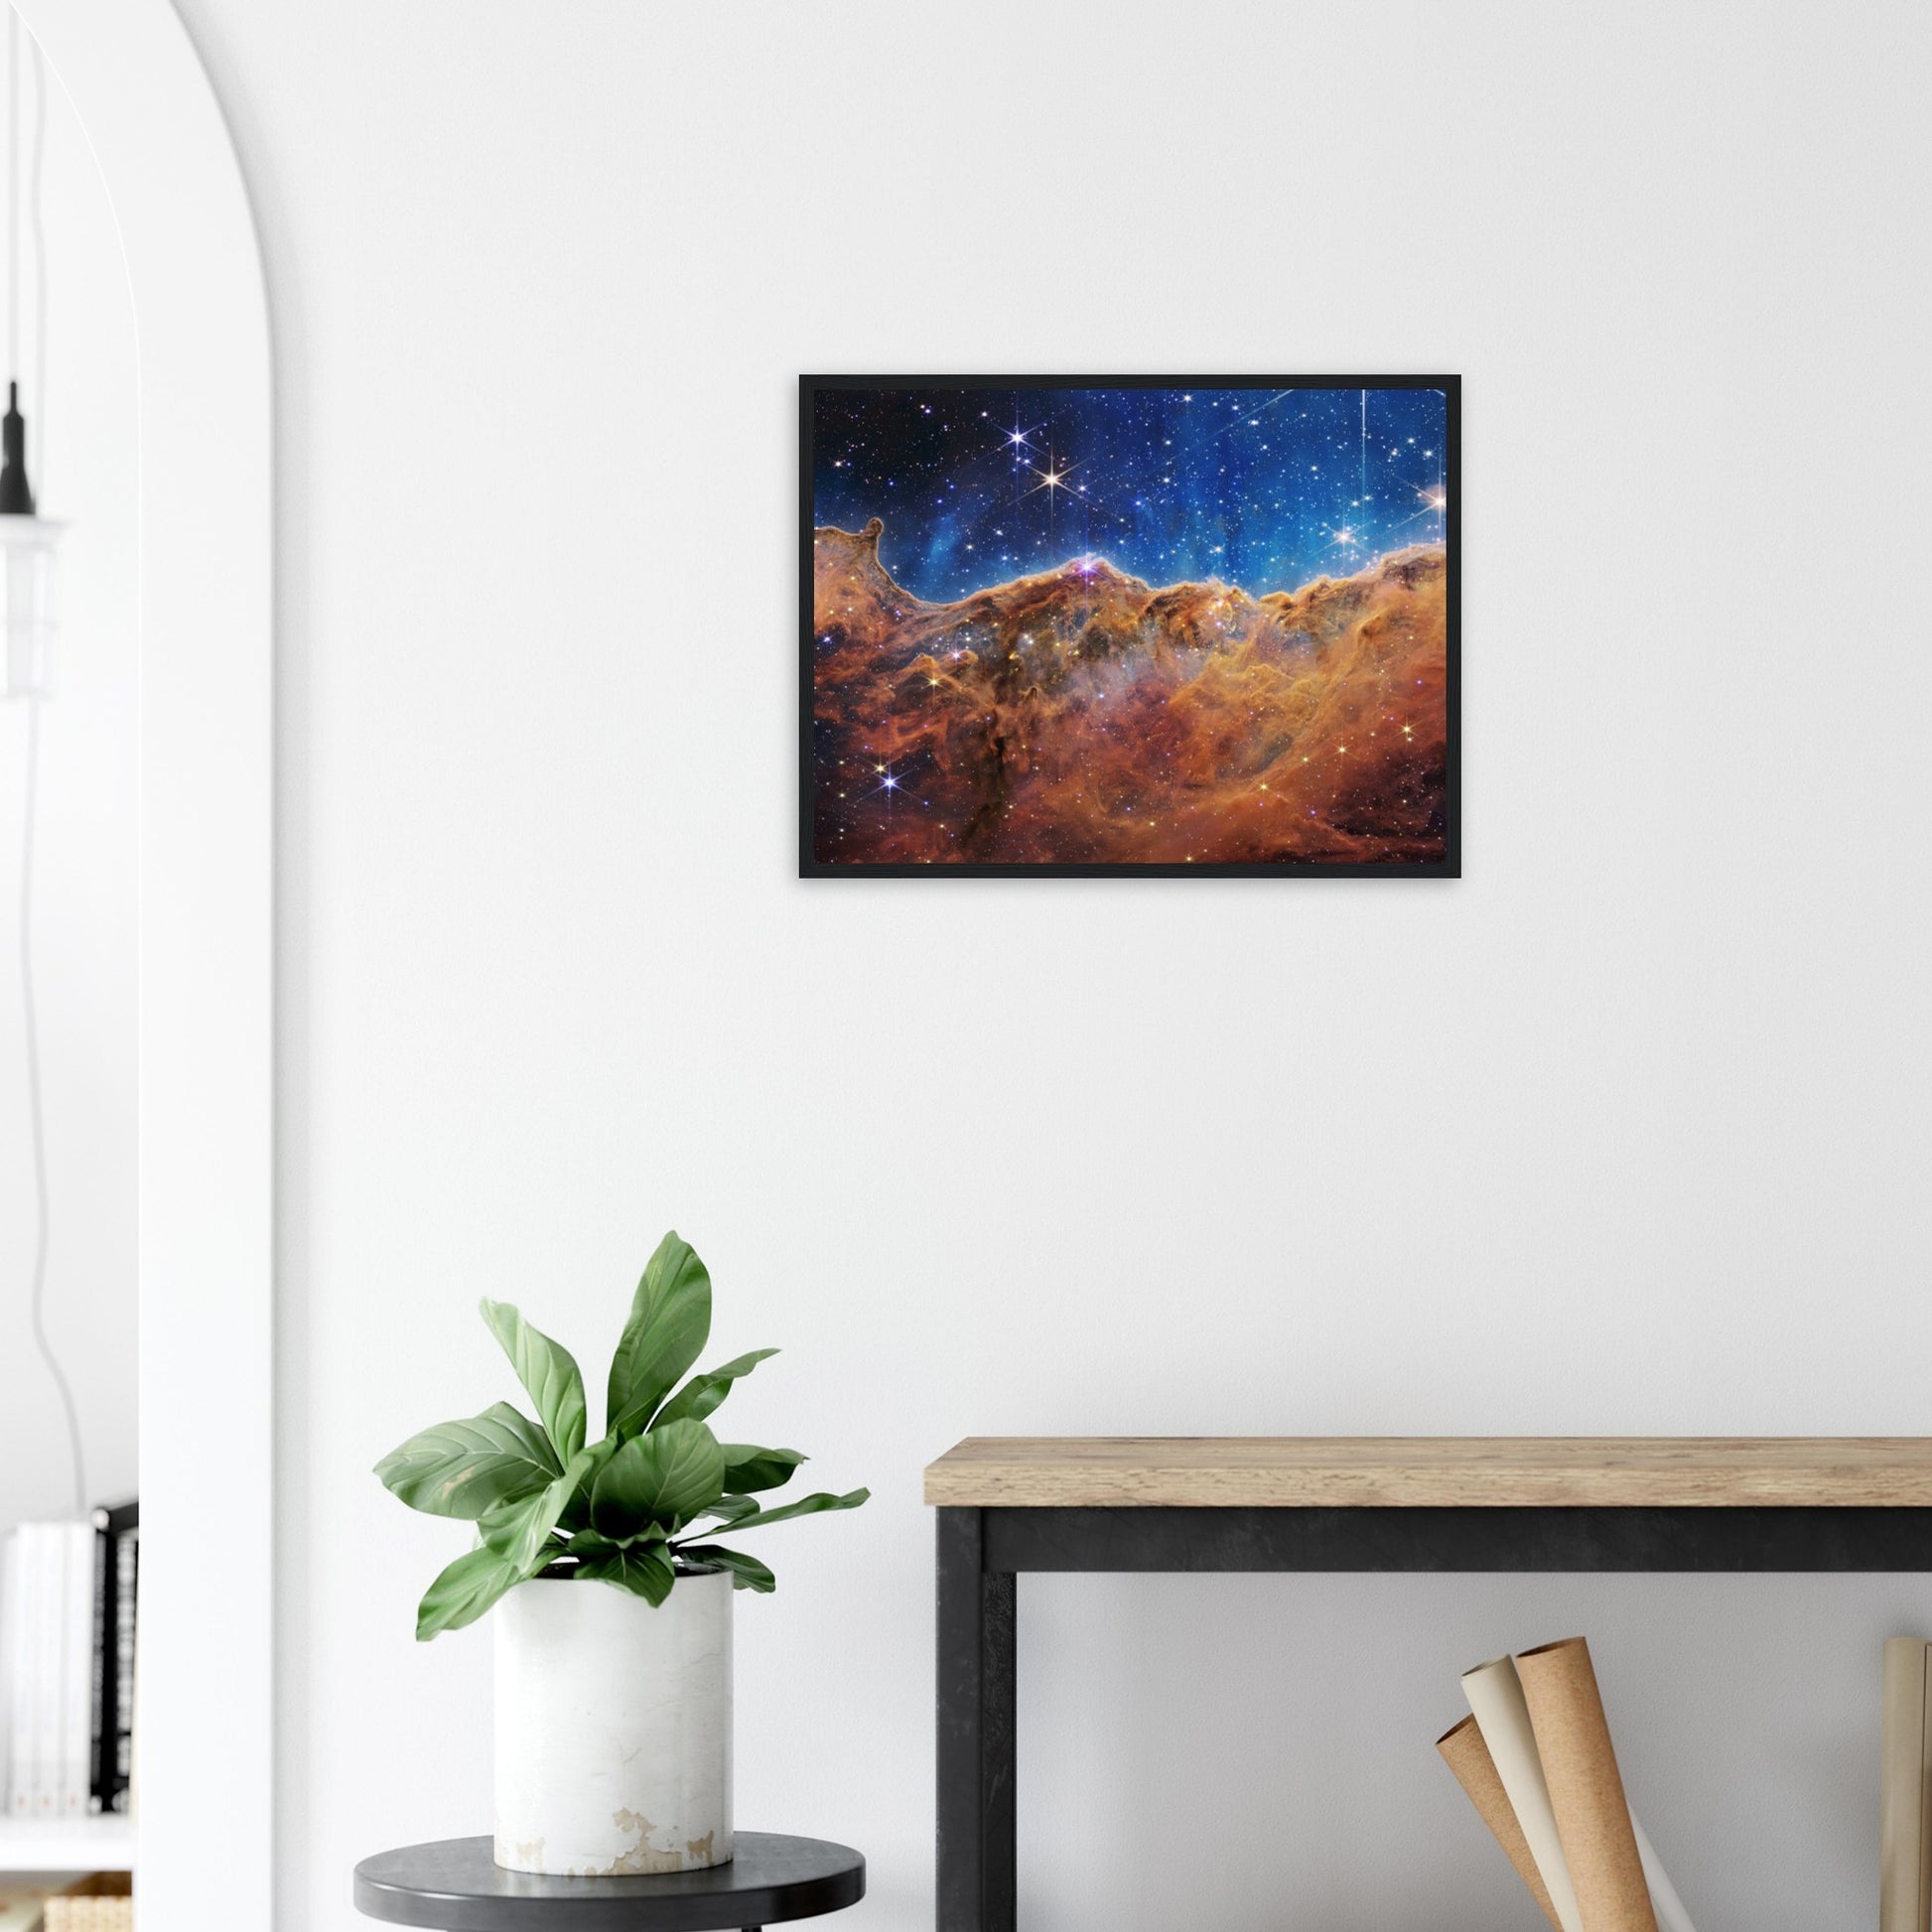 Astrofotografie Carinanebel, Carina Nebula NGC3324 - Premium Poster 